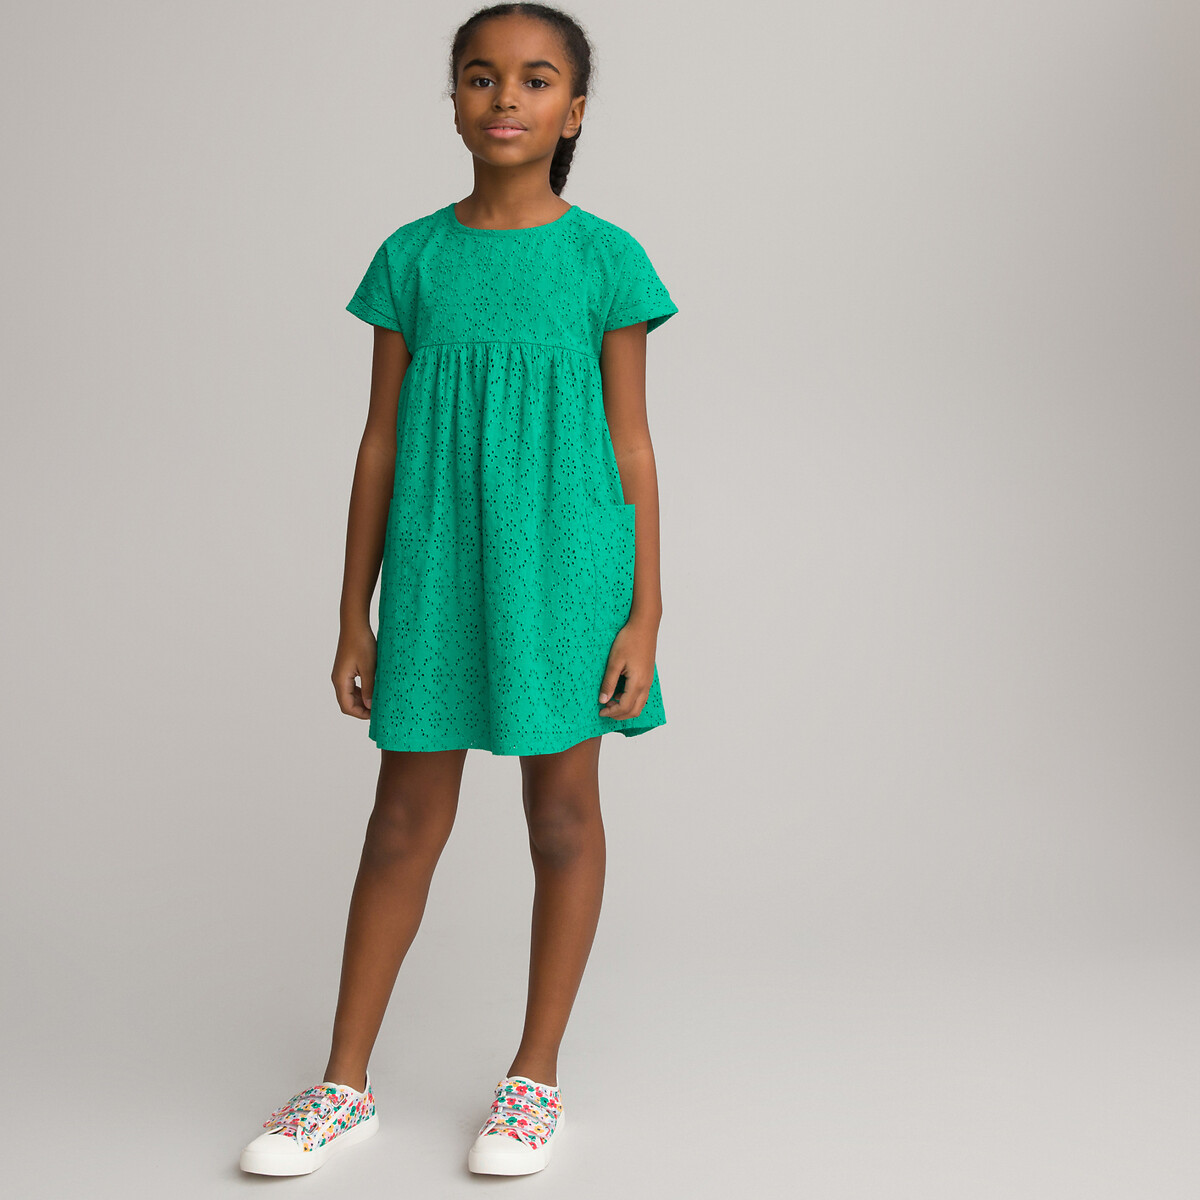 Платье С короткими рукавами и английской вышивкой 8 лет - 126 см зеленый LaRedoute, размер 8 лет - 126 см